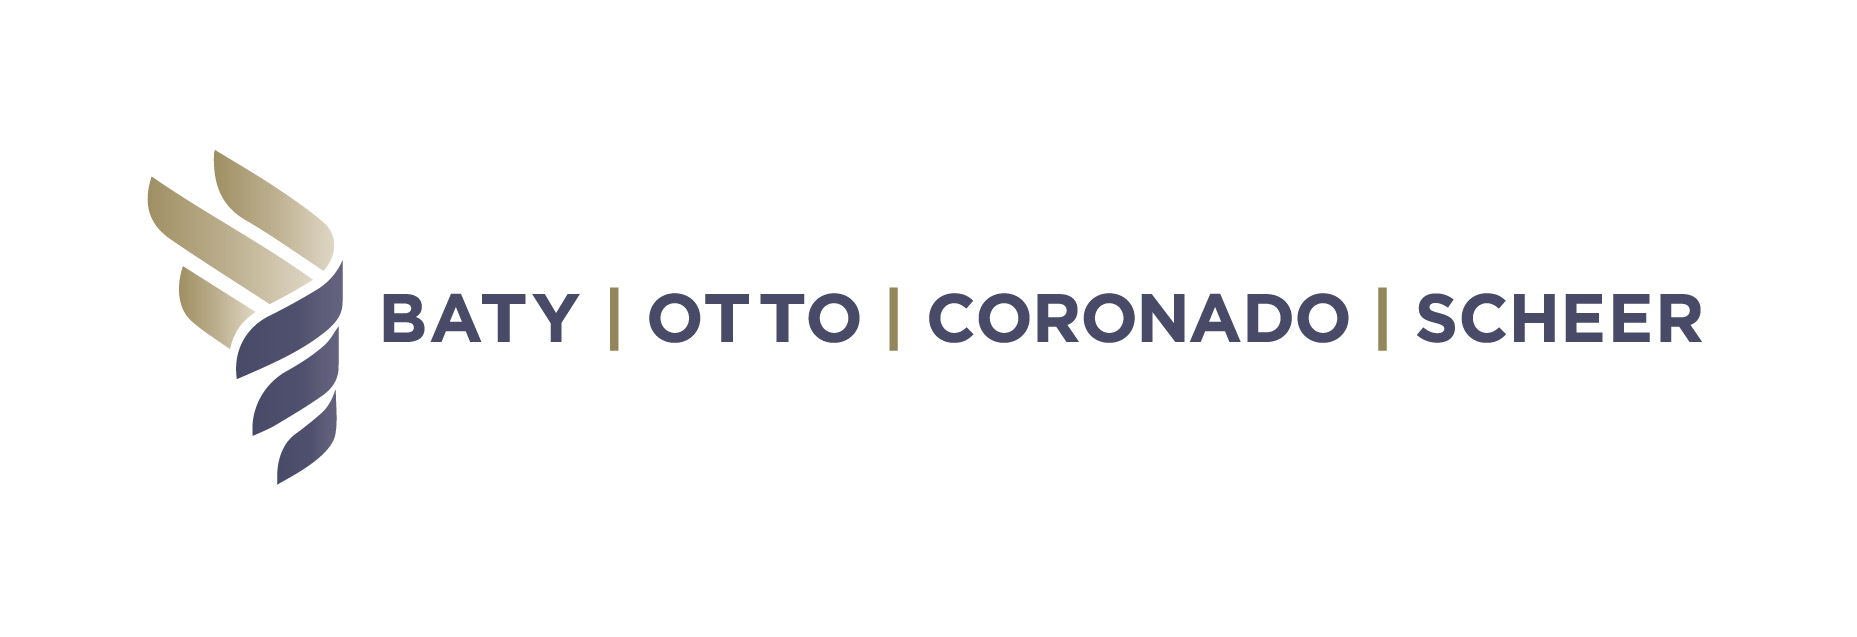 Baty Otto Coronado Scheer logo